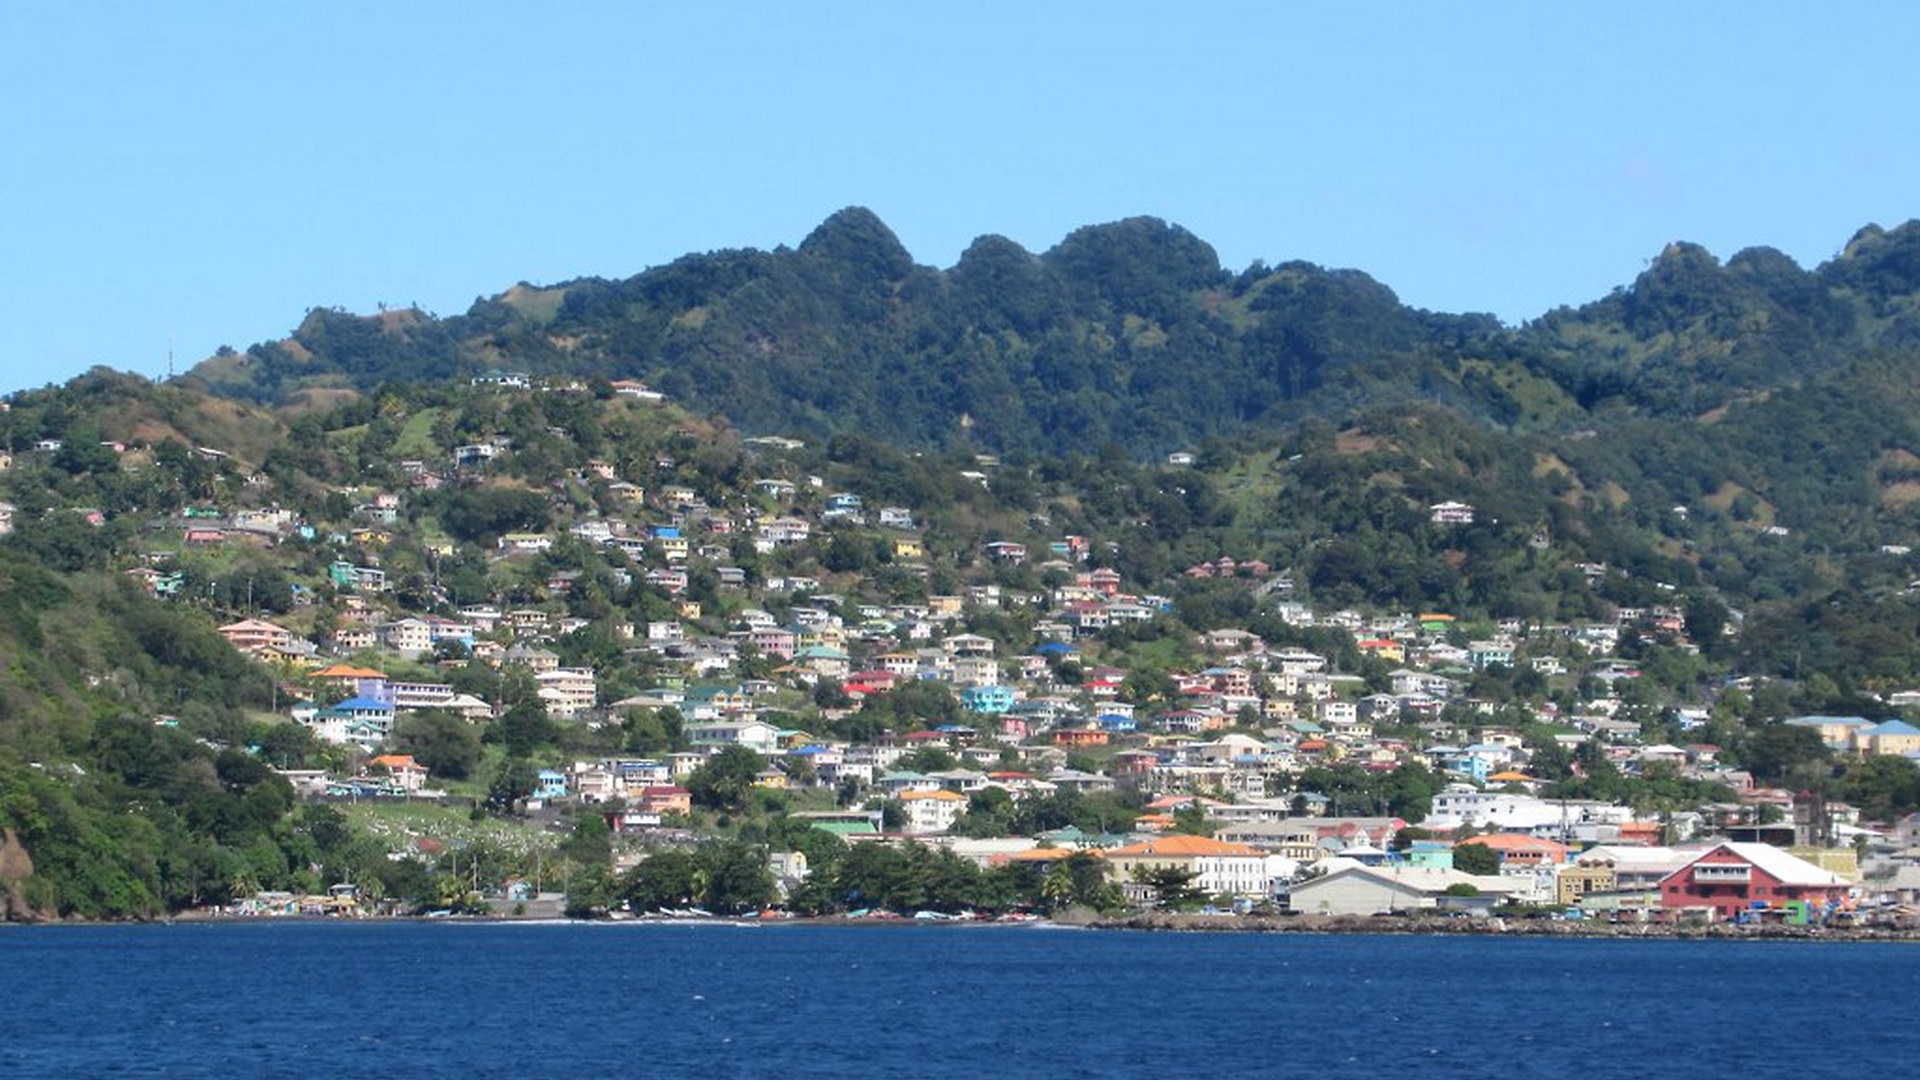 Kingstown sur l'île de St. Vincent dans les Caraïbes | Flickr CC BY 2.0